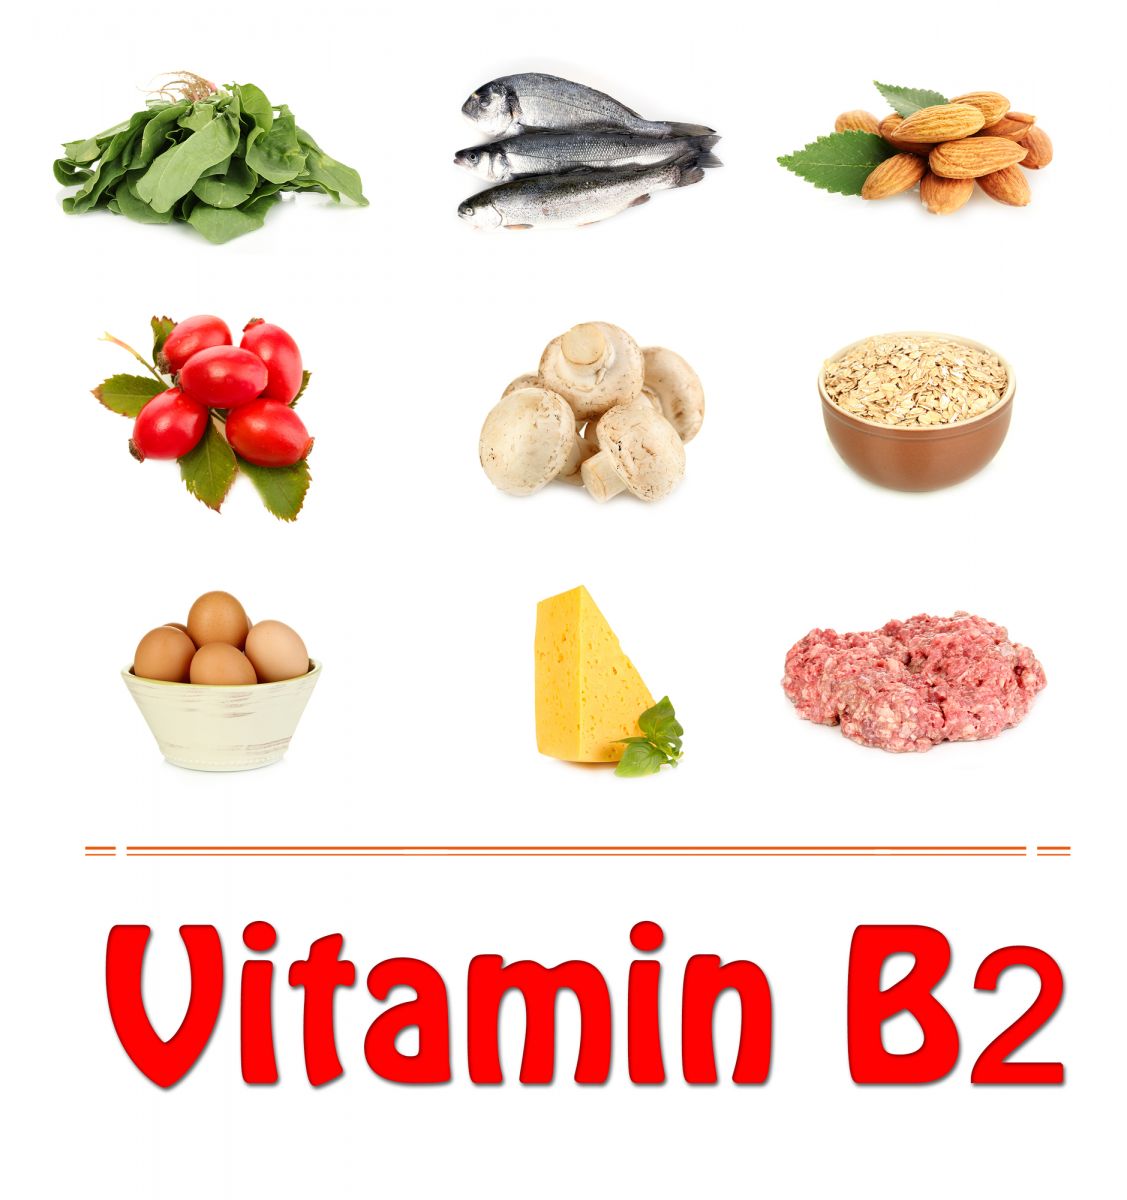 Продукты с витамином в 2. Витамин в2 содержится в продуктах. Продукты содержащие витамин в2. Продукты - источники витамина в2. Витамины группы b2.